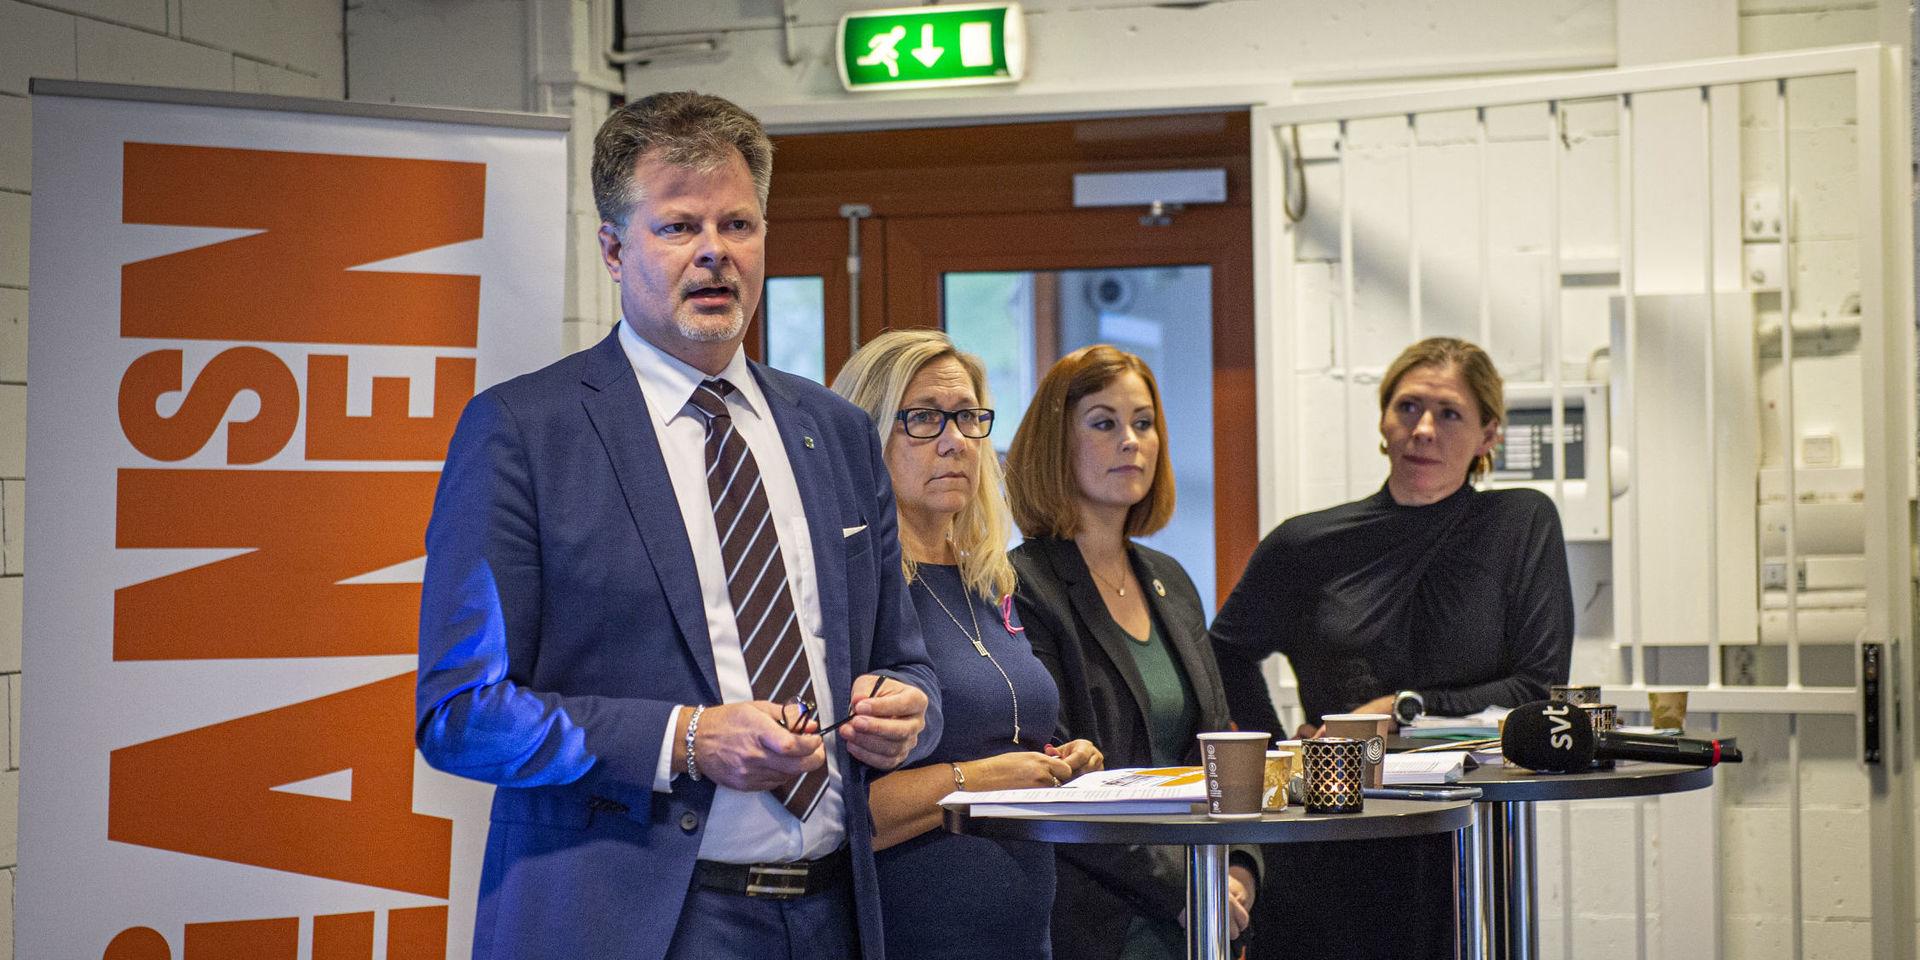 Kommunalråden Axel Josefson (M), Helene Odenjung (L), Emmyly Bönfors (C) och Elisabet Lann (KD) presenterade Alliansens budgetförslag för 2020.